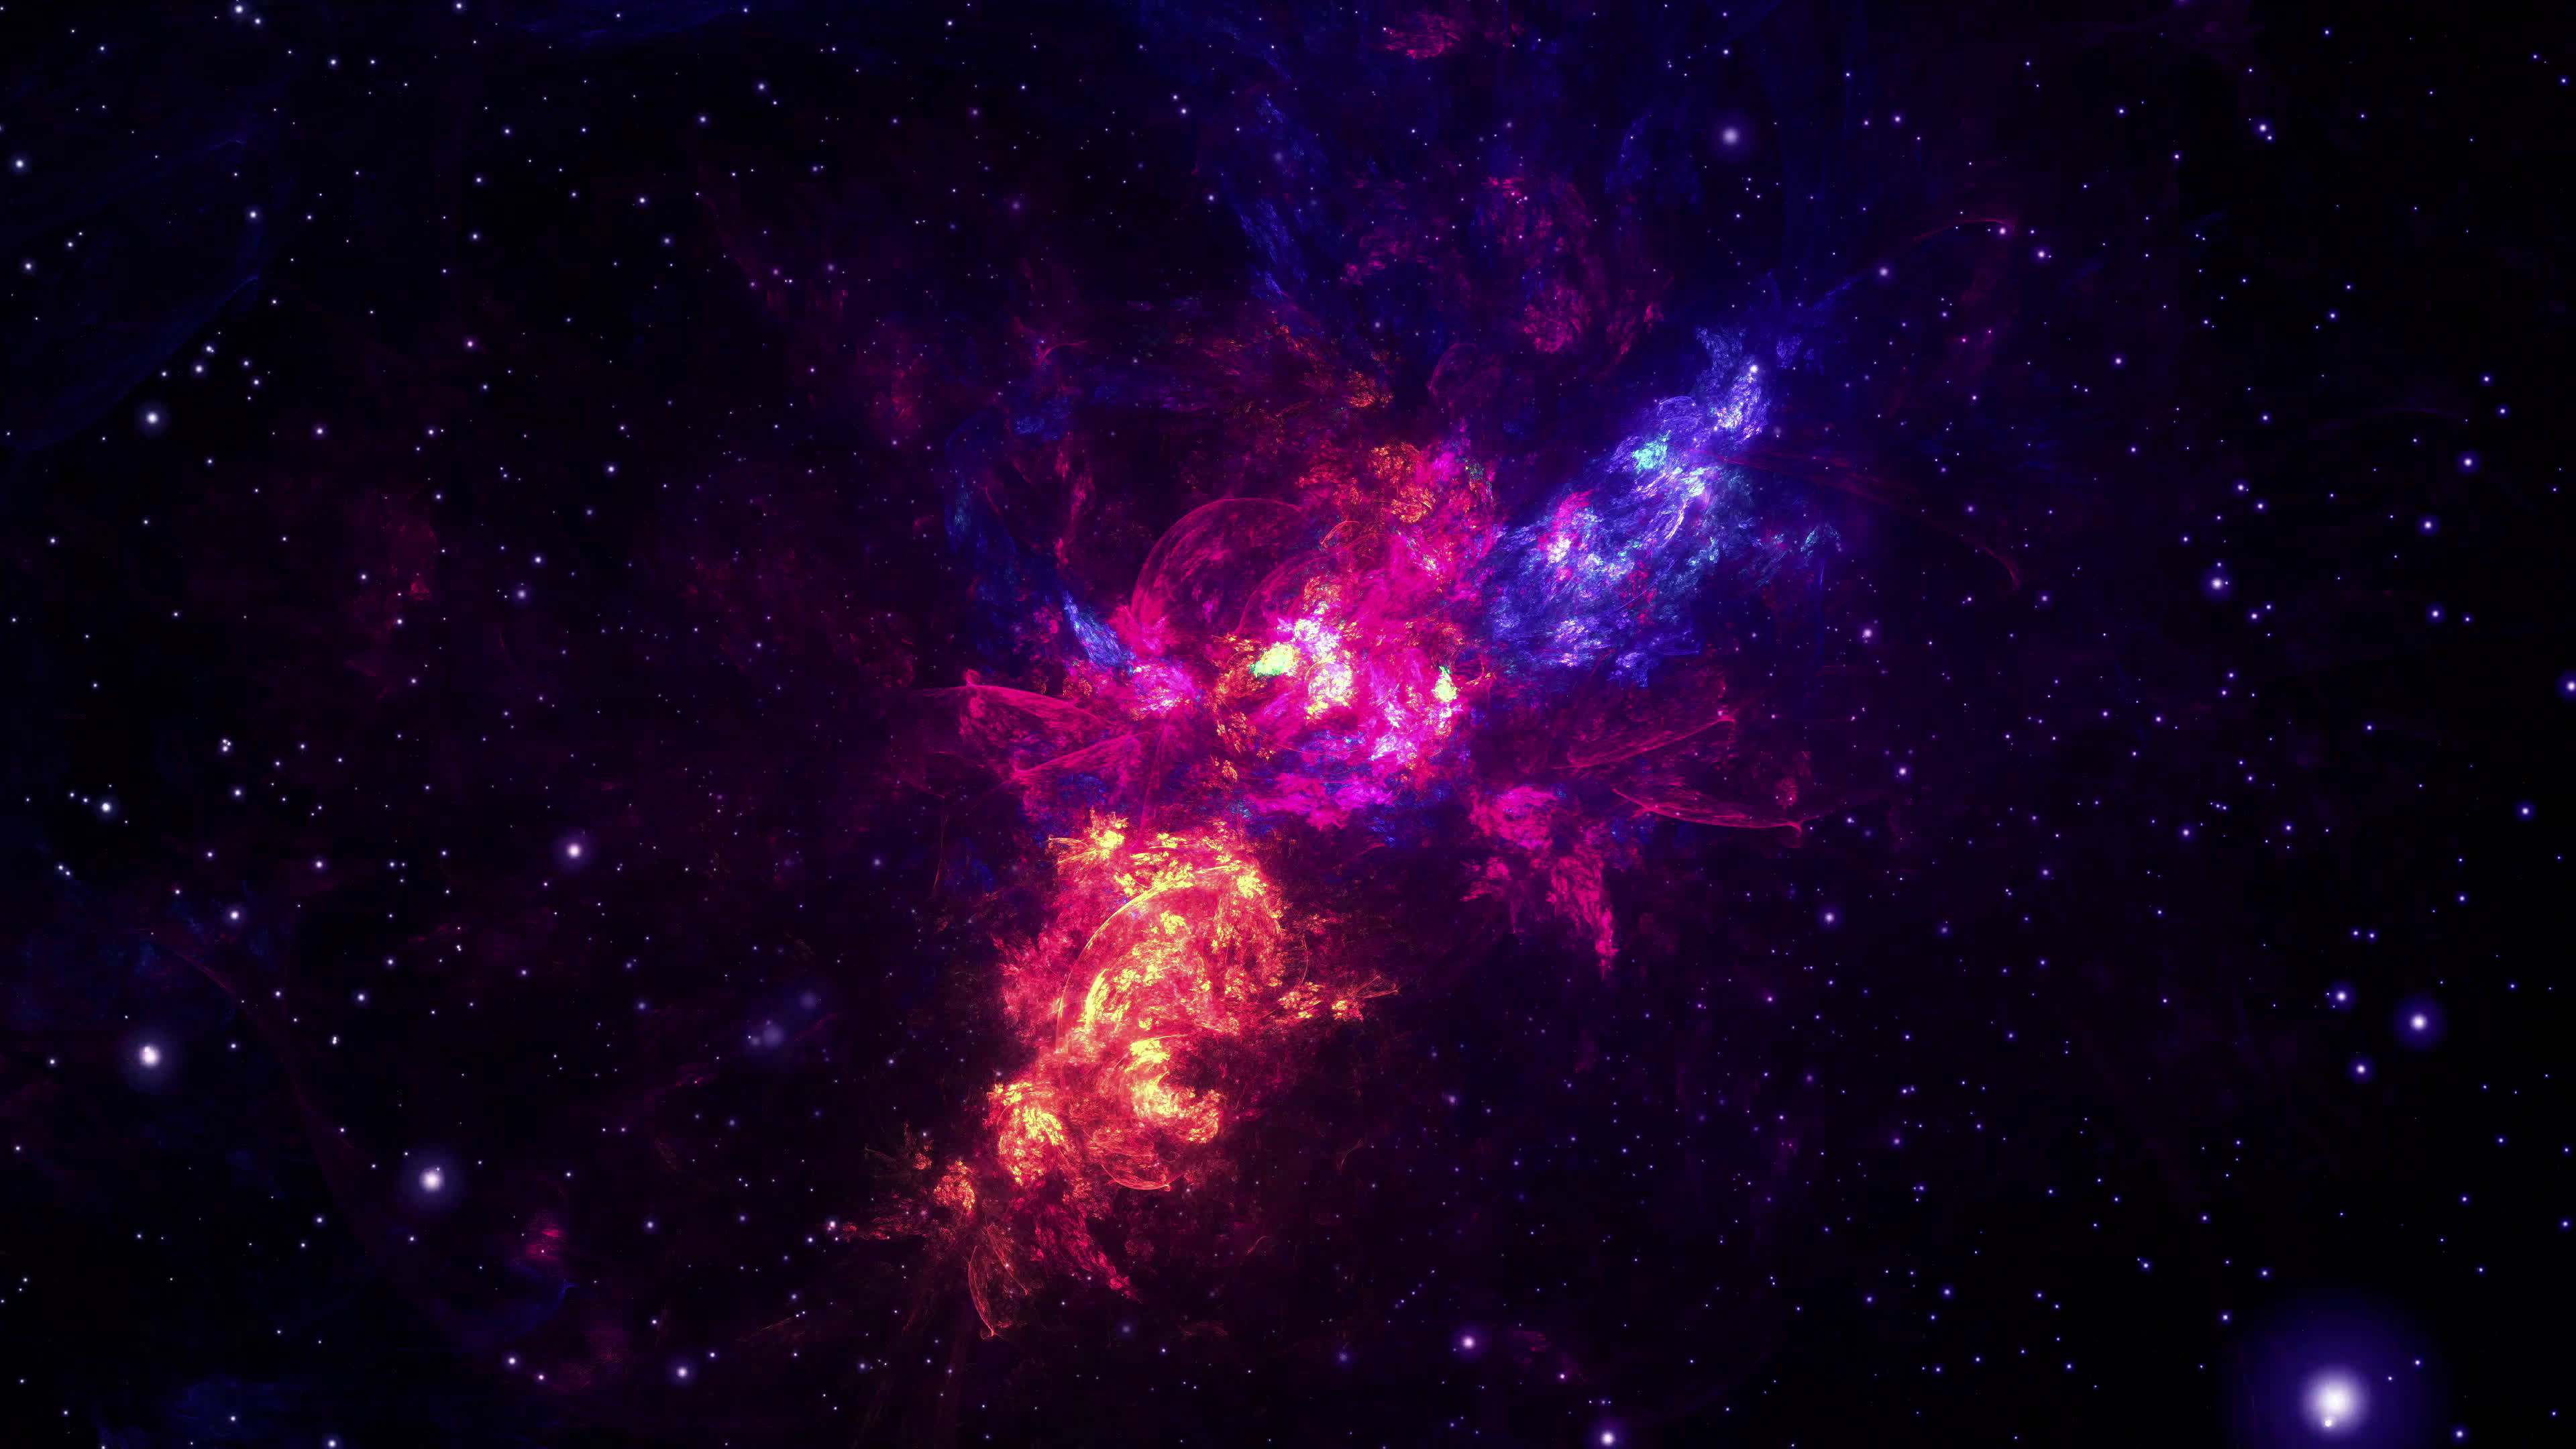 Space Nebula: Điều gì có thể đẹp hơn viễn cảnh vũ trụ đầy màu sắc với những vệ tinh và sao trên nền tối đen? Hãy thưởng thức hình ảnh về những chòm sao và cụm sao khổng lồ trong vũ trụ với hình ảnh beautiful space nebula. Những cảnh tượng tuyệt đẹp này sẽ khiến bạn phải trầm trồ trước sự vạn vật của vũ trụ.